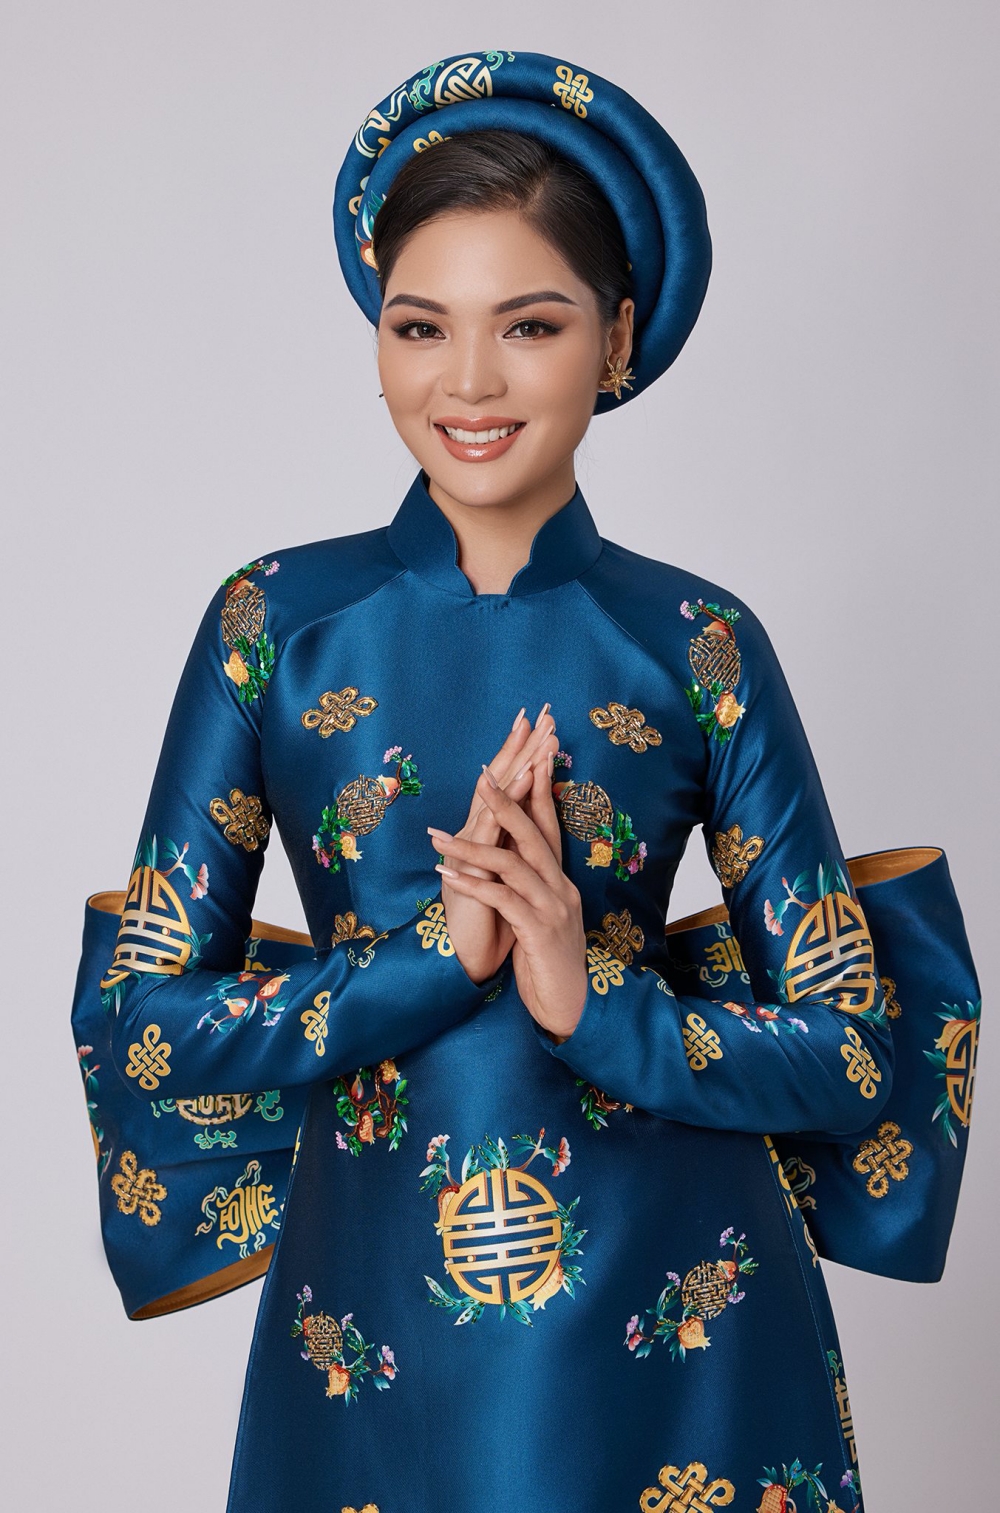 Chiến binh Miss Earth Nguyễn Vân Anh khoe sắc trong tà áo dài Việt - Ảnh 4